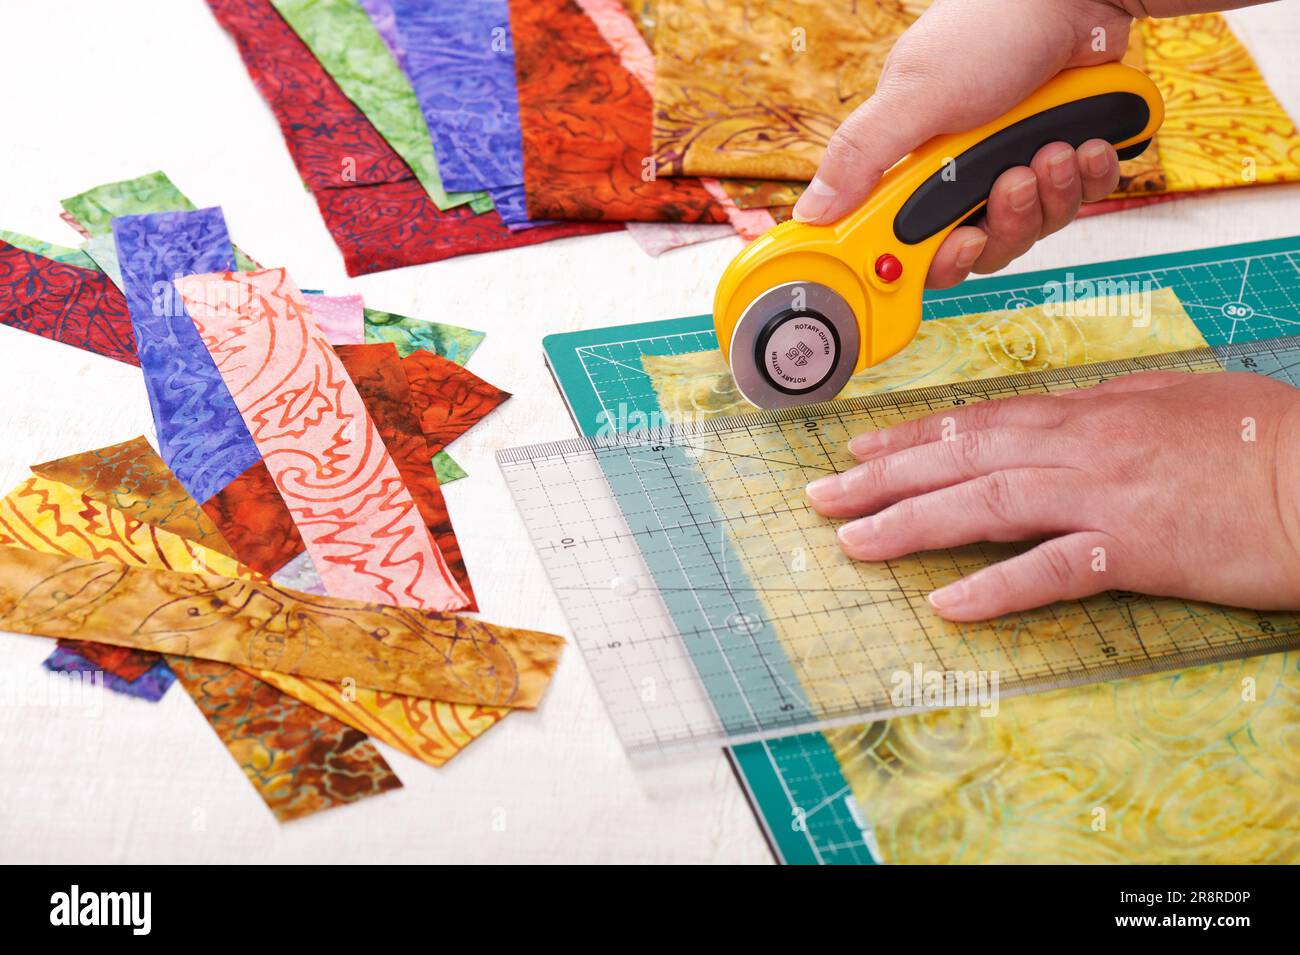 Procese las piezas de tela cortando con un cortador giratorio en la alfombrilla usando regla Foto de stock